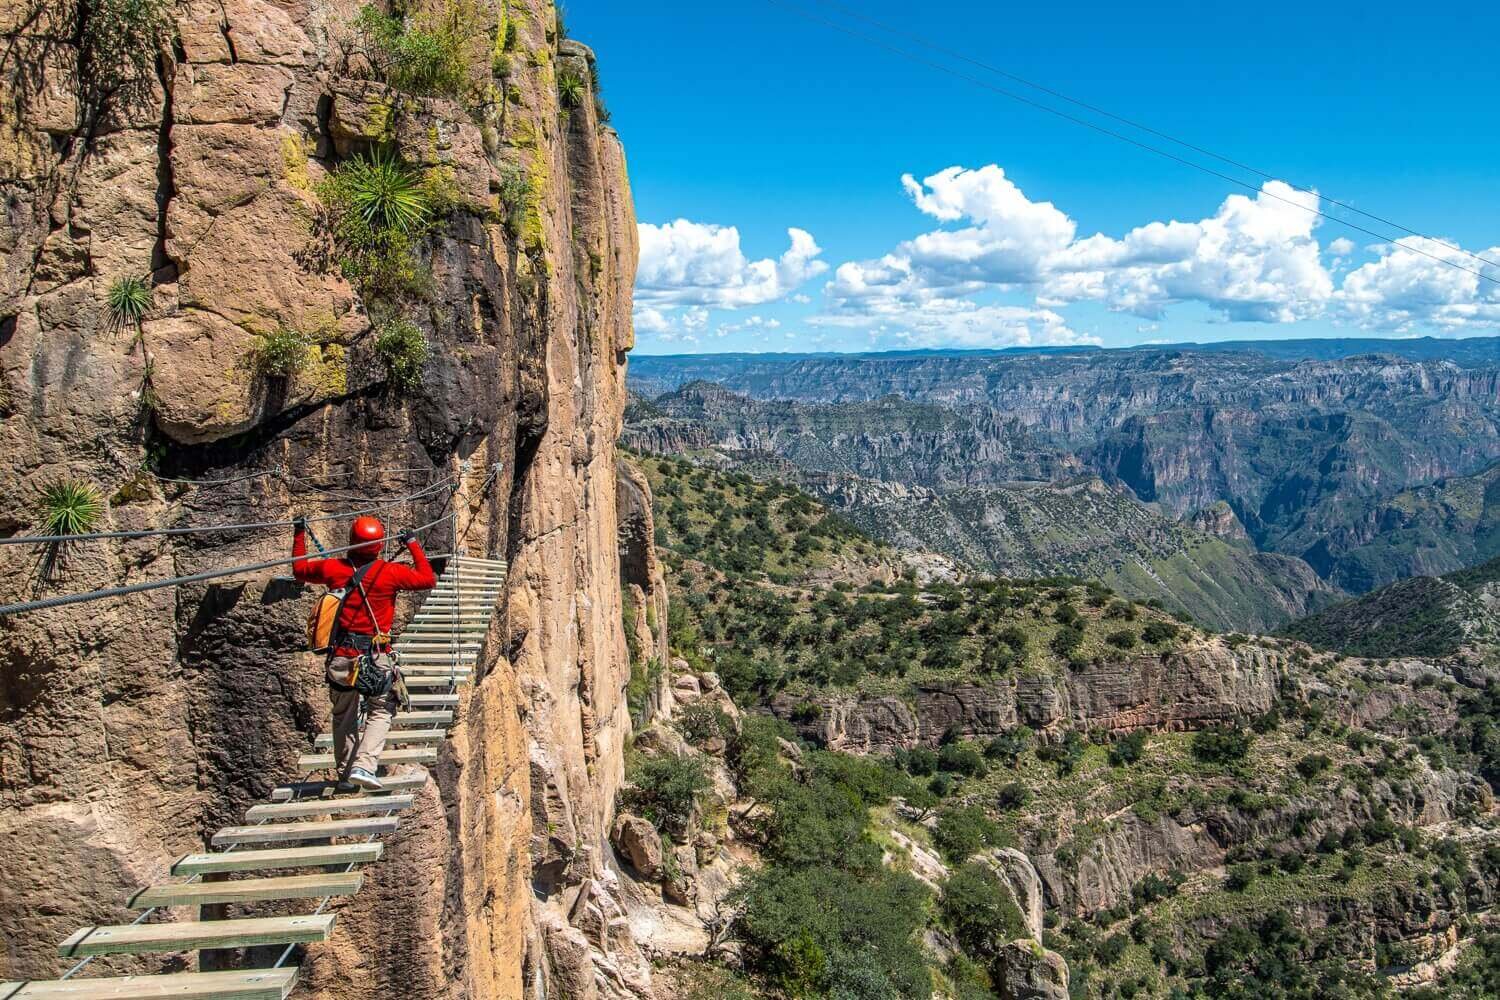 Puente colgante en la vía ferrata de Barrancas del Cobre. Parque de aventuras Barrancas del Cobre. Turismo de aventura en Chihuahua.